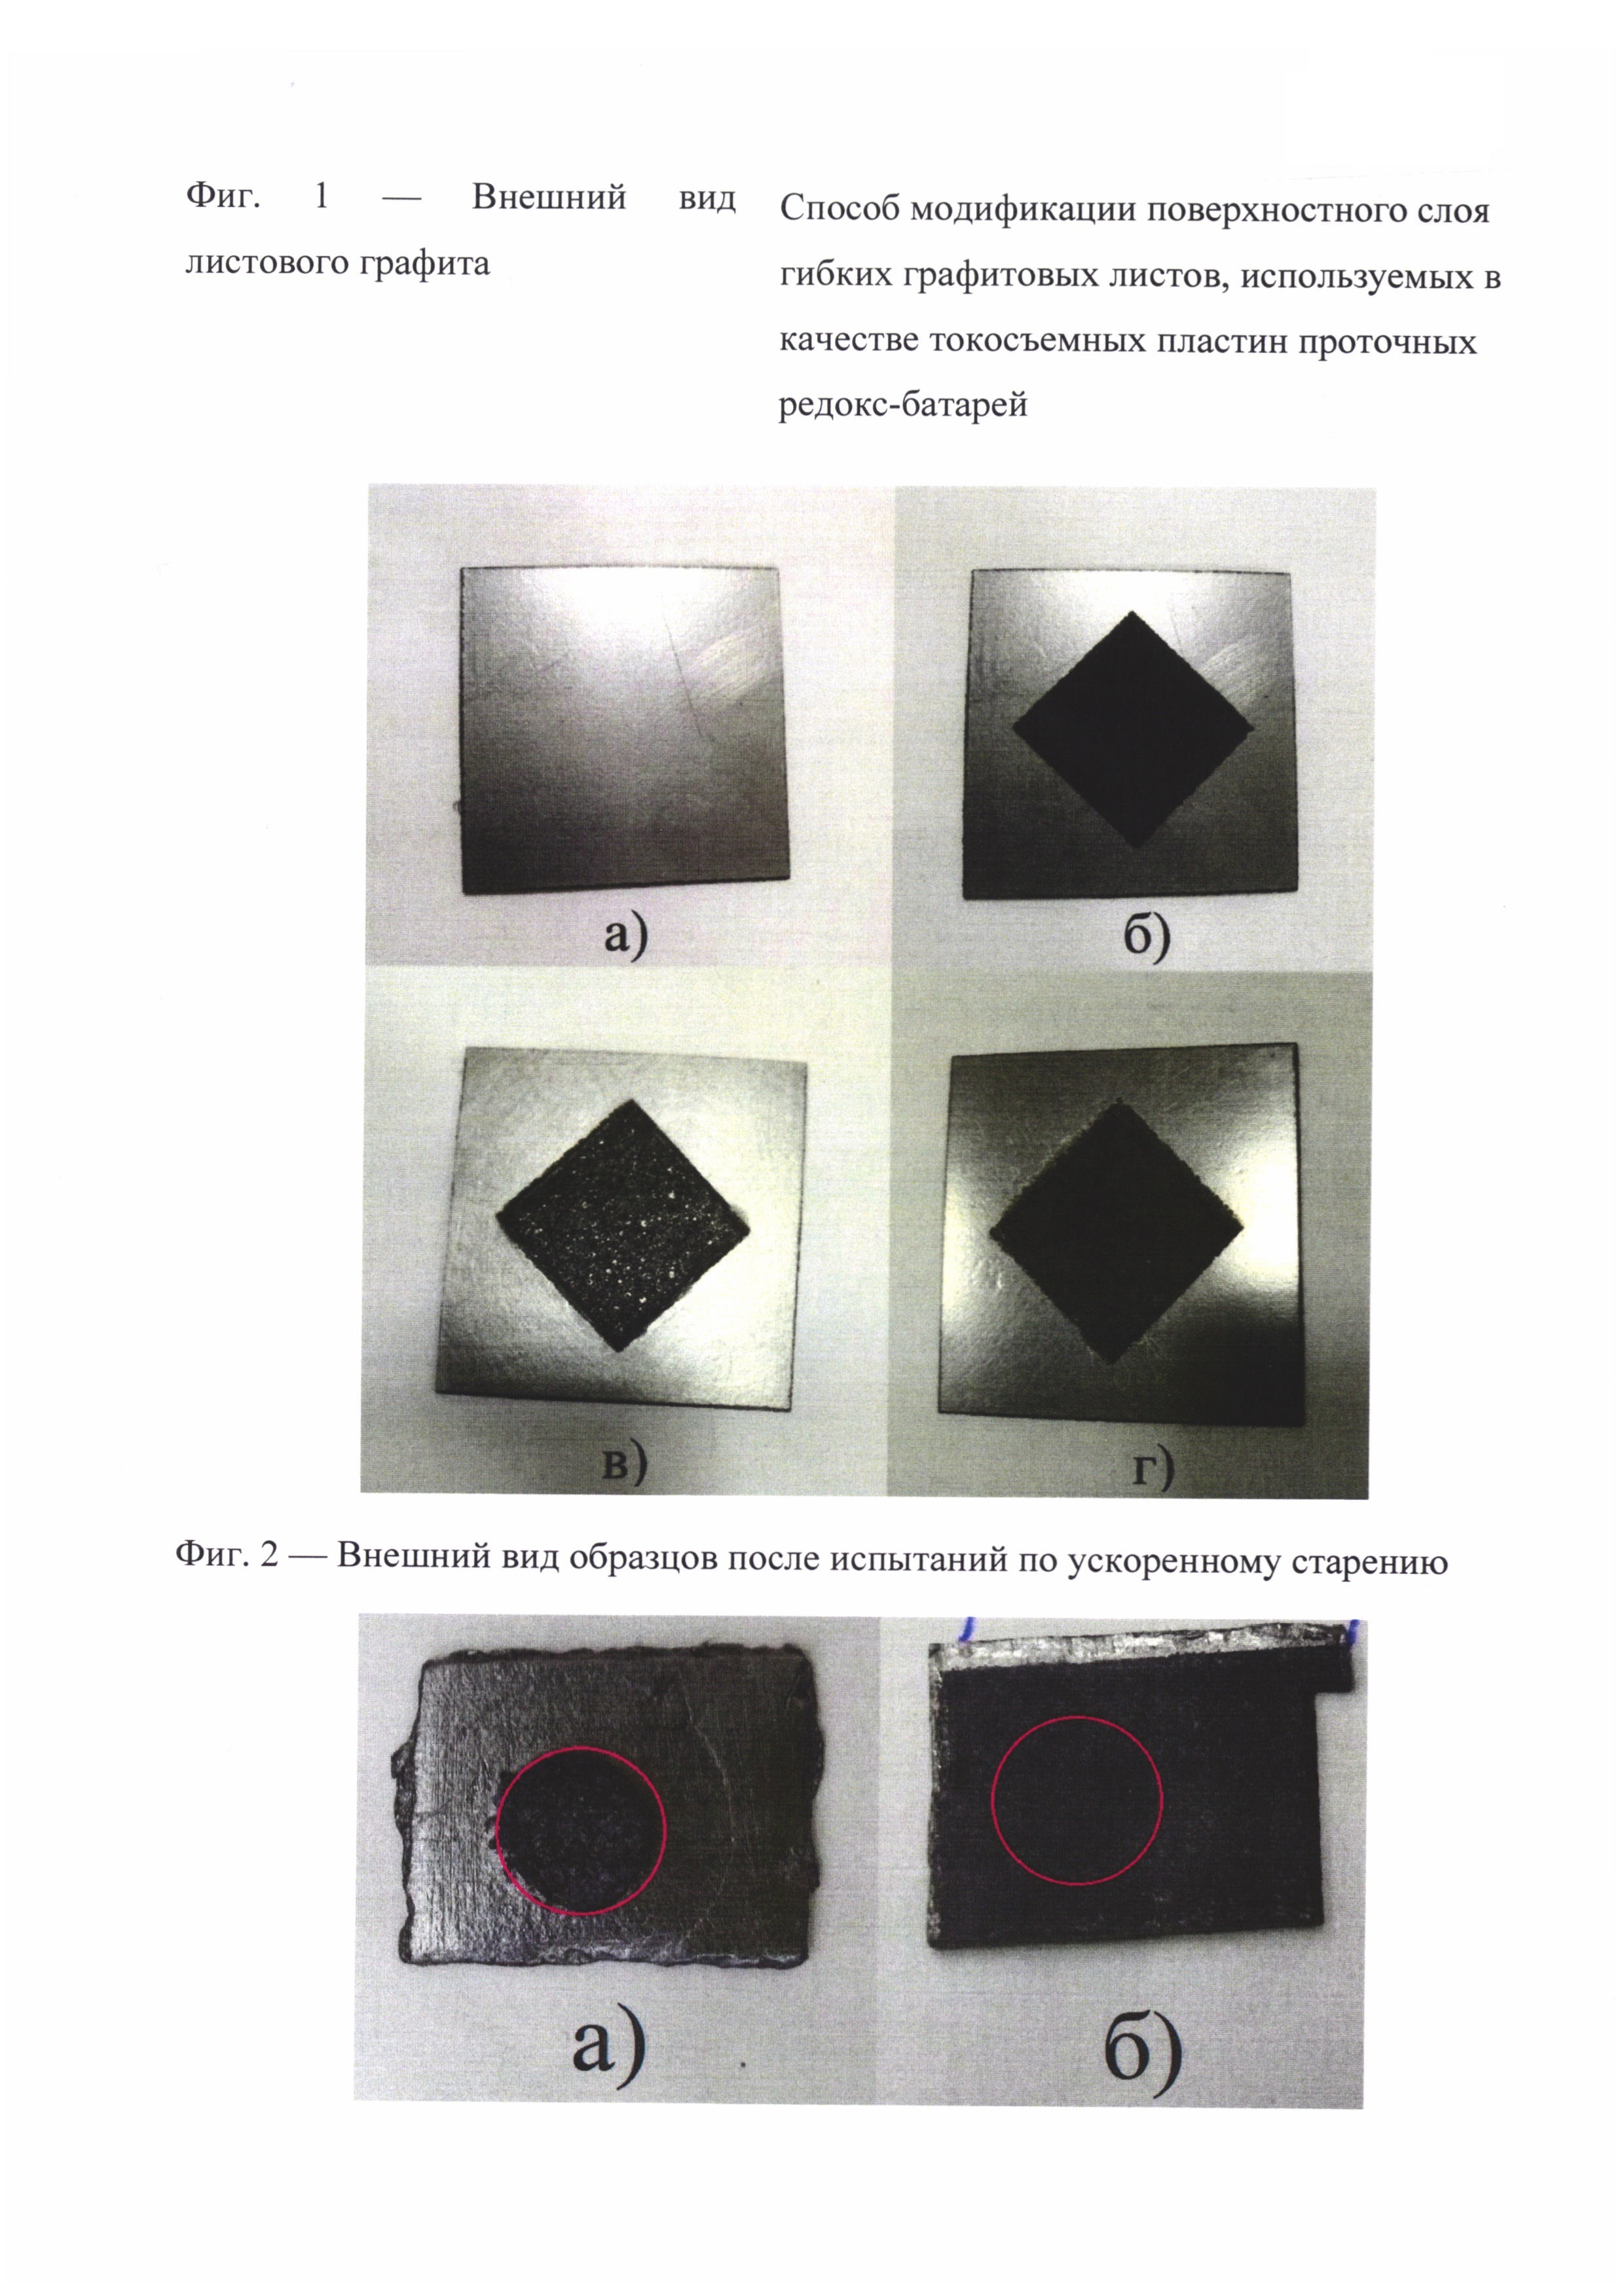 Способ модификации поверхностного слоя гибких графитовых листов, используемых в качестве токосъемных пластин проточных редокс-батарей